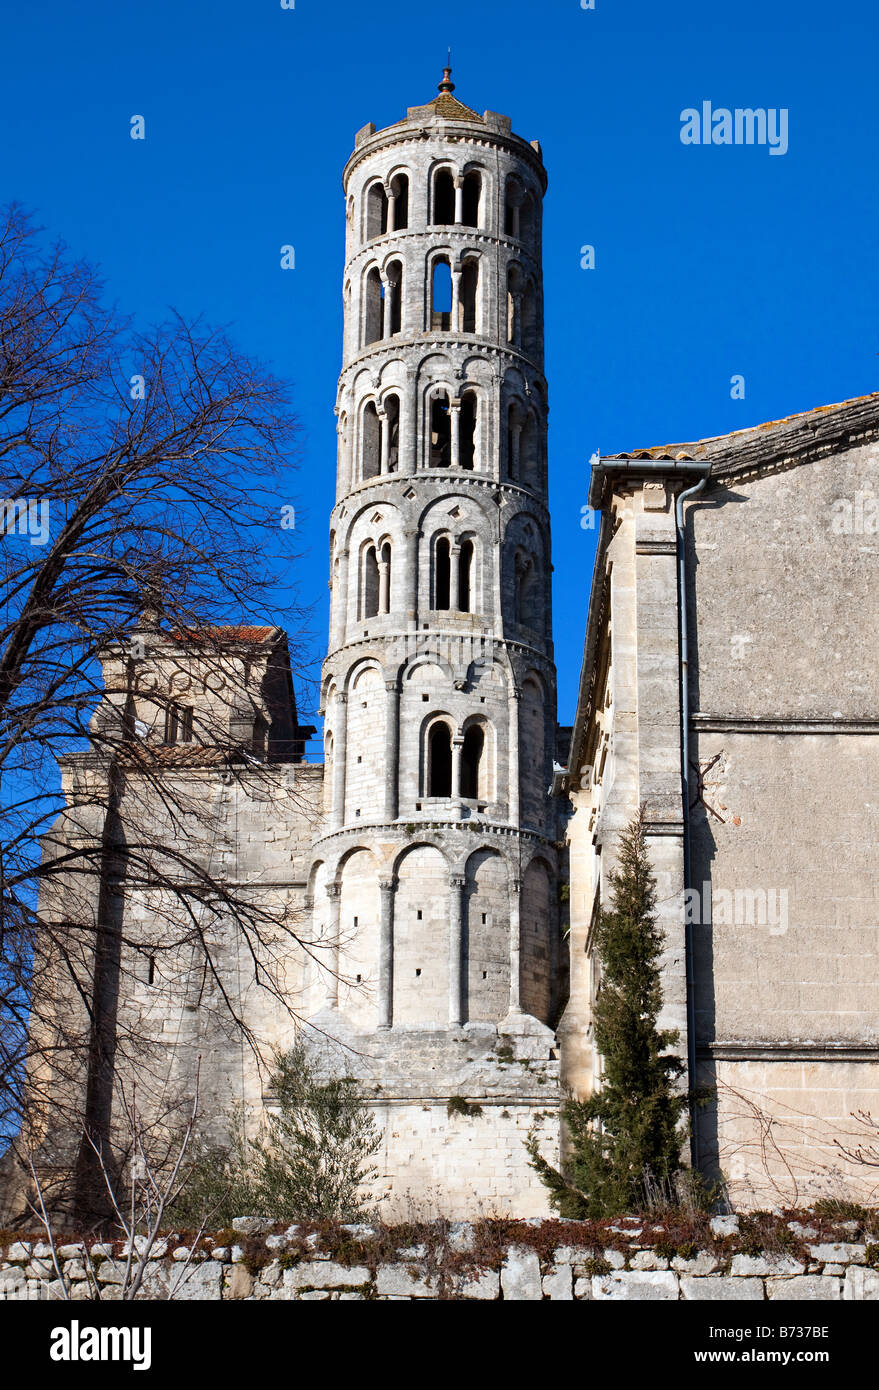 La tour du 11ème siècle Fenestrelle ou fenêtre Tour de la cathédrale de Saint Theodorit à Uzès Gard France Banque D'Images